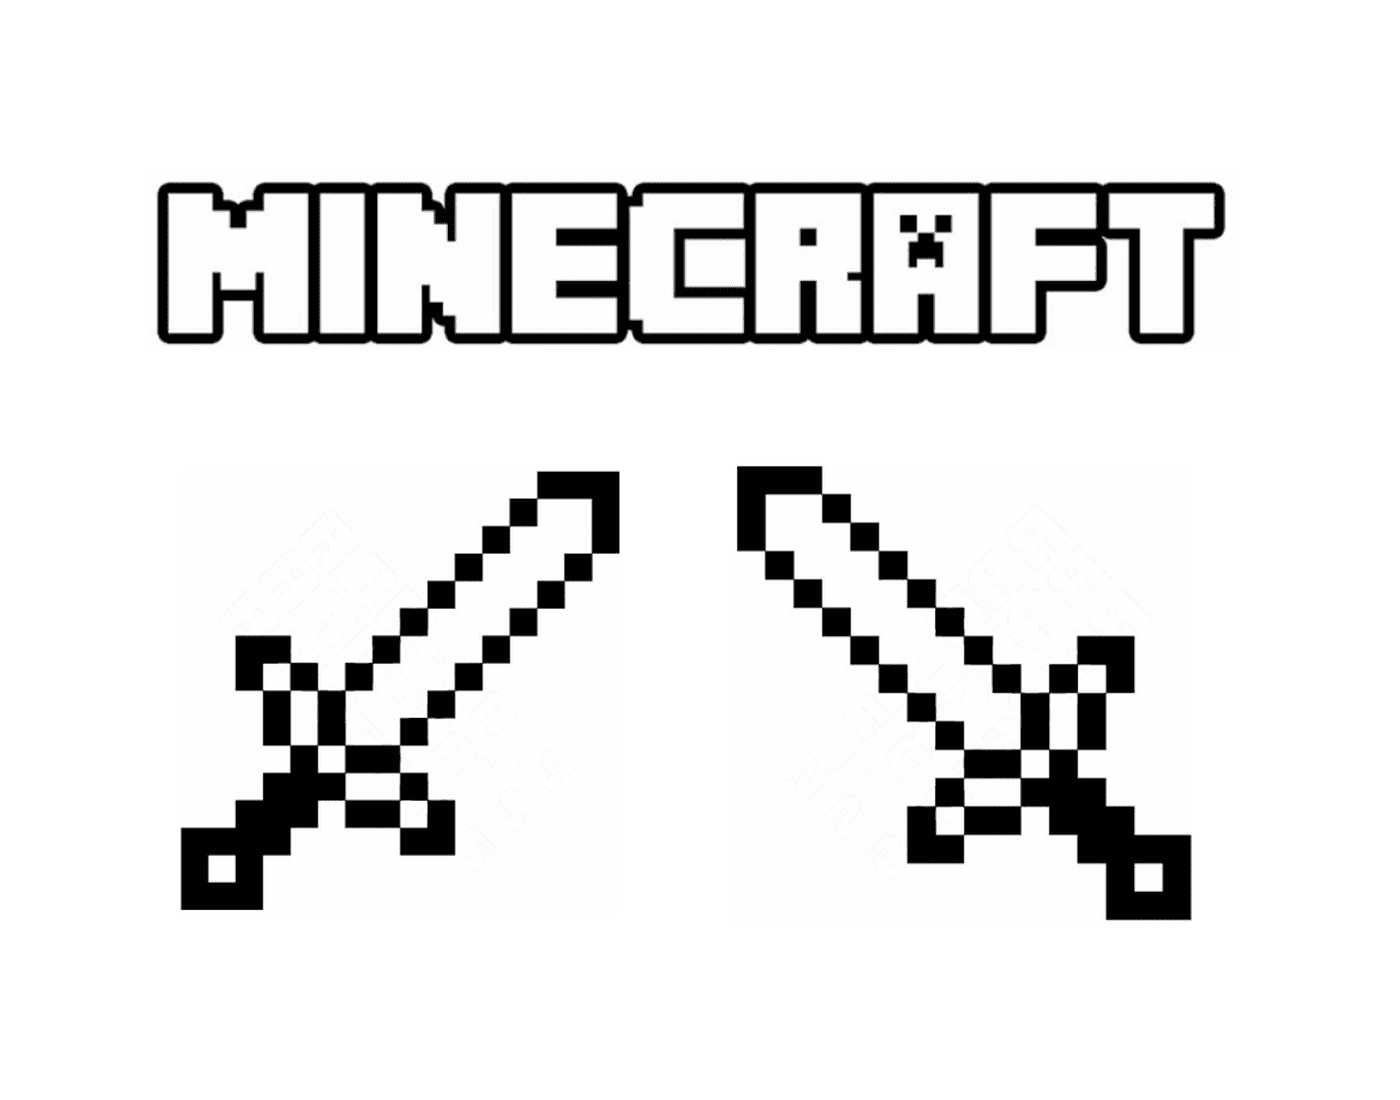  Duas espadas cruzadas de Minecraft 